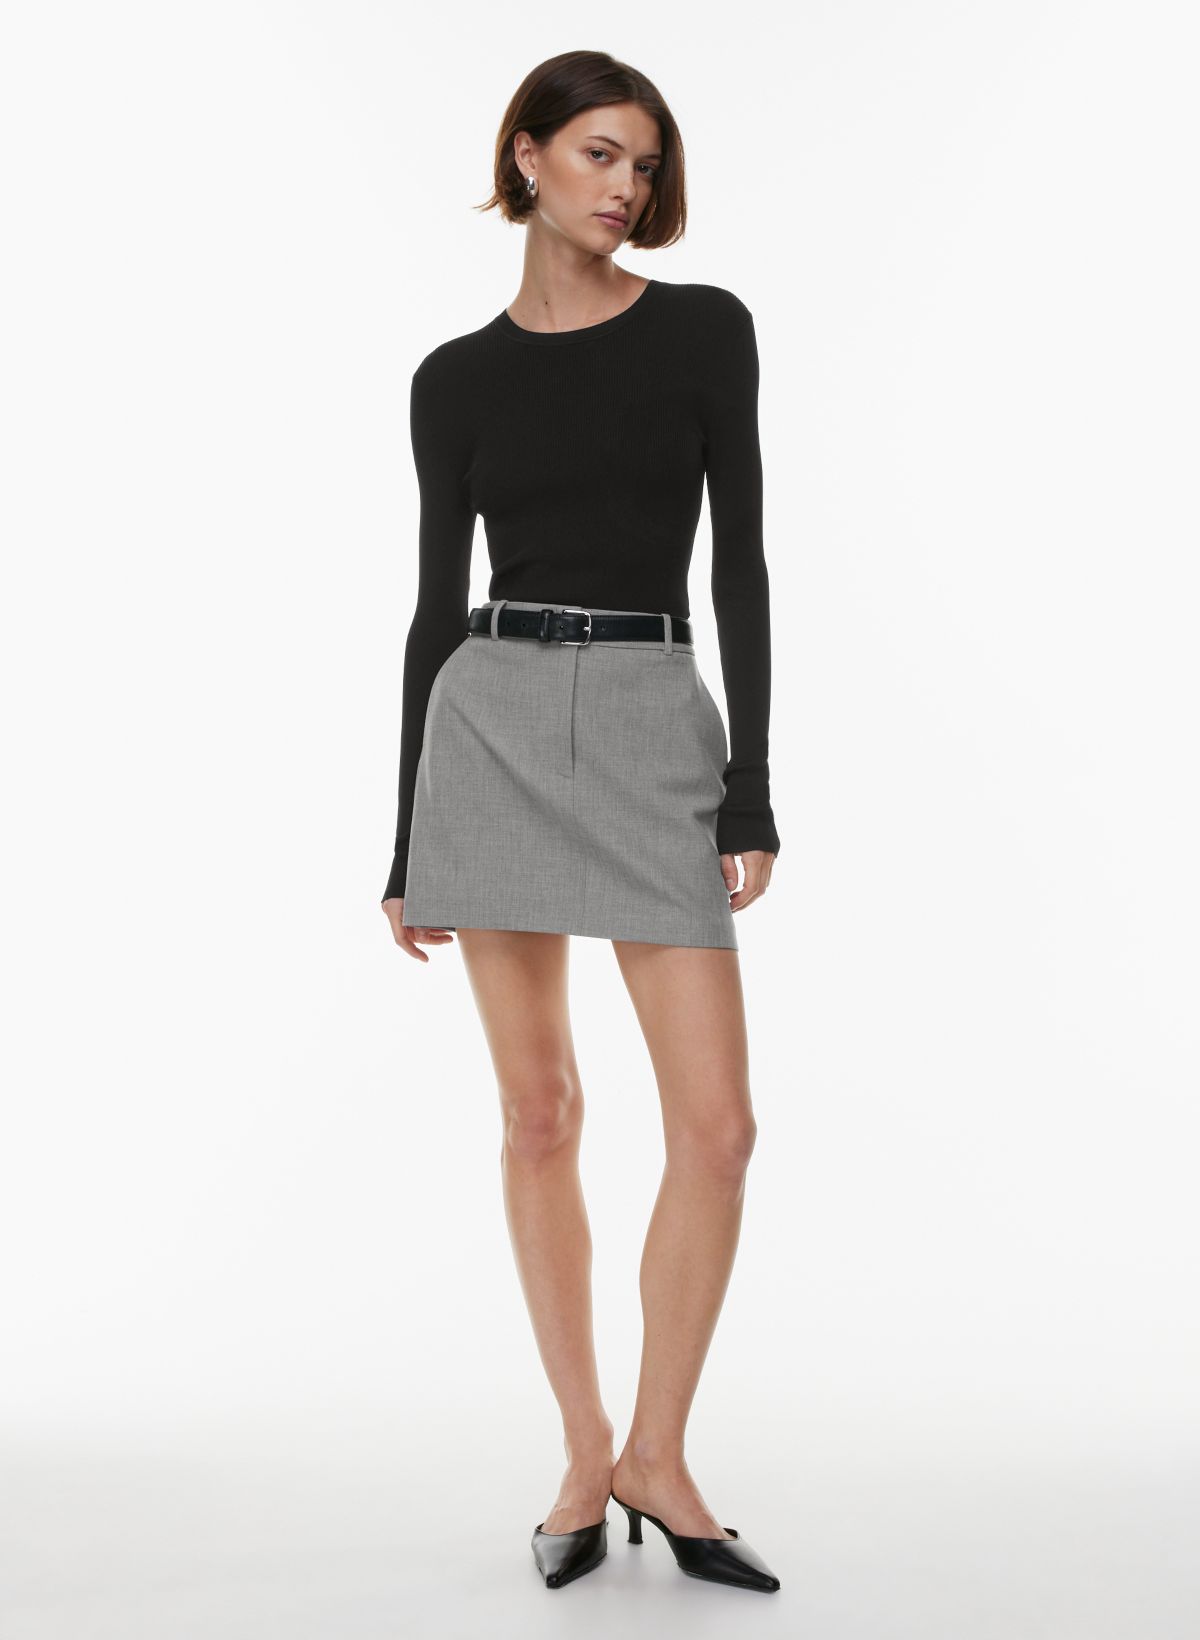 Girls' Senior School Plain Long Black Pencil Skirt